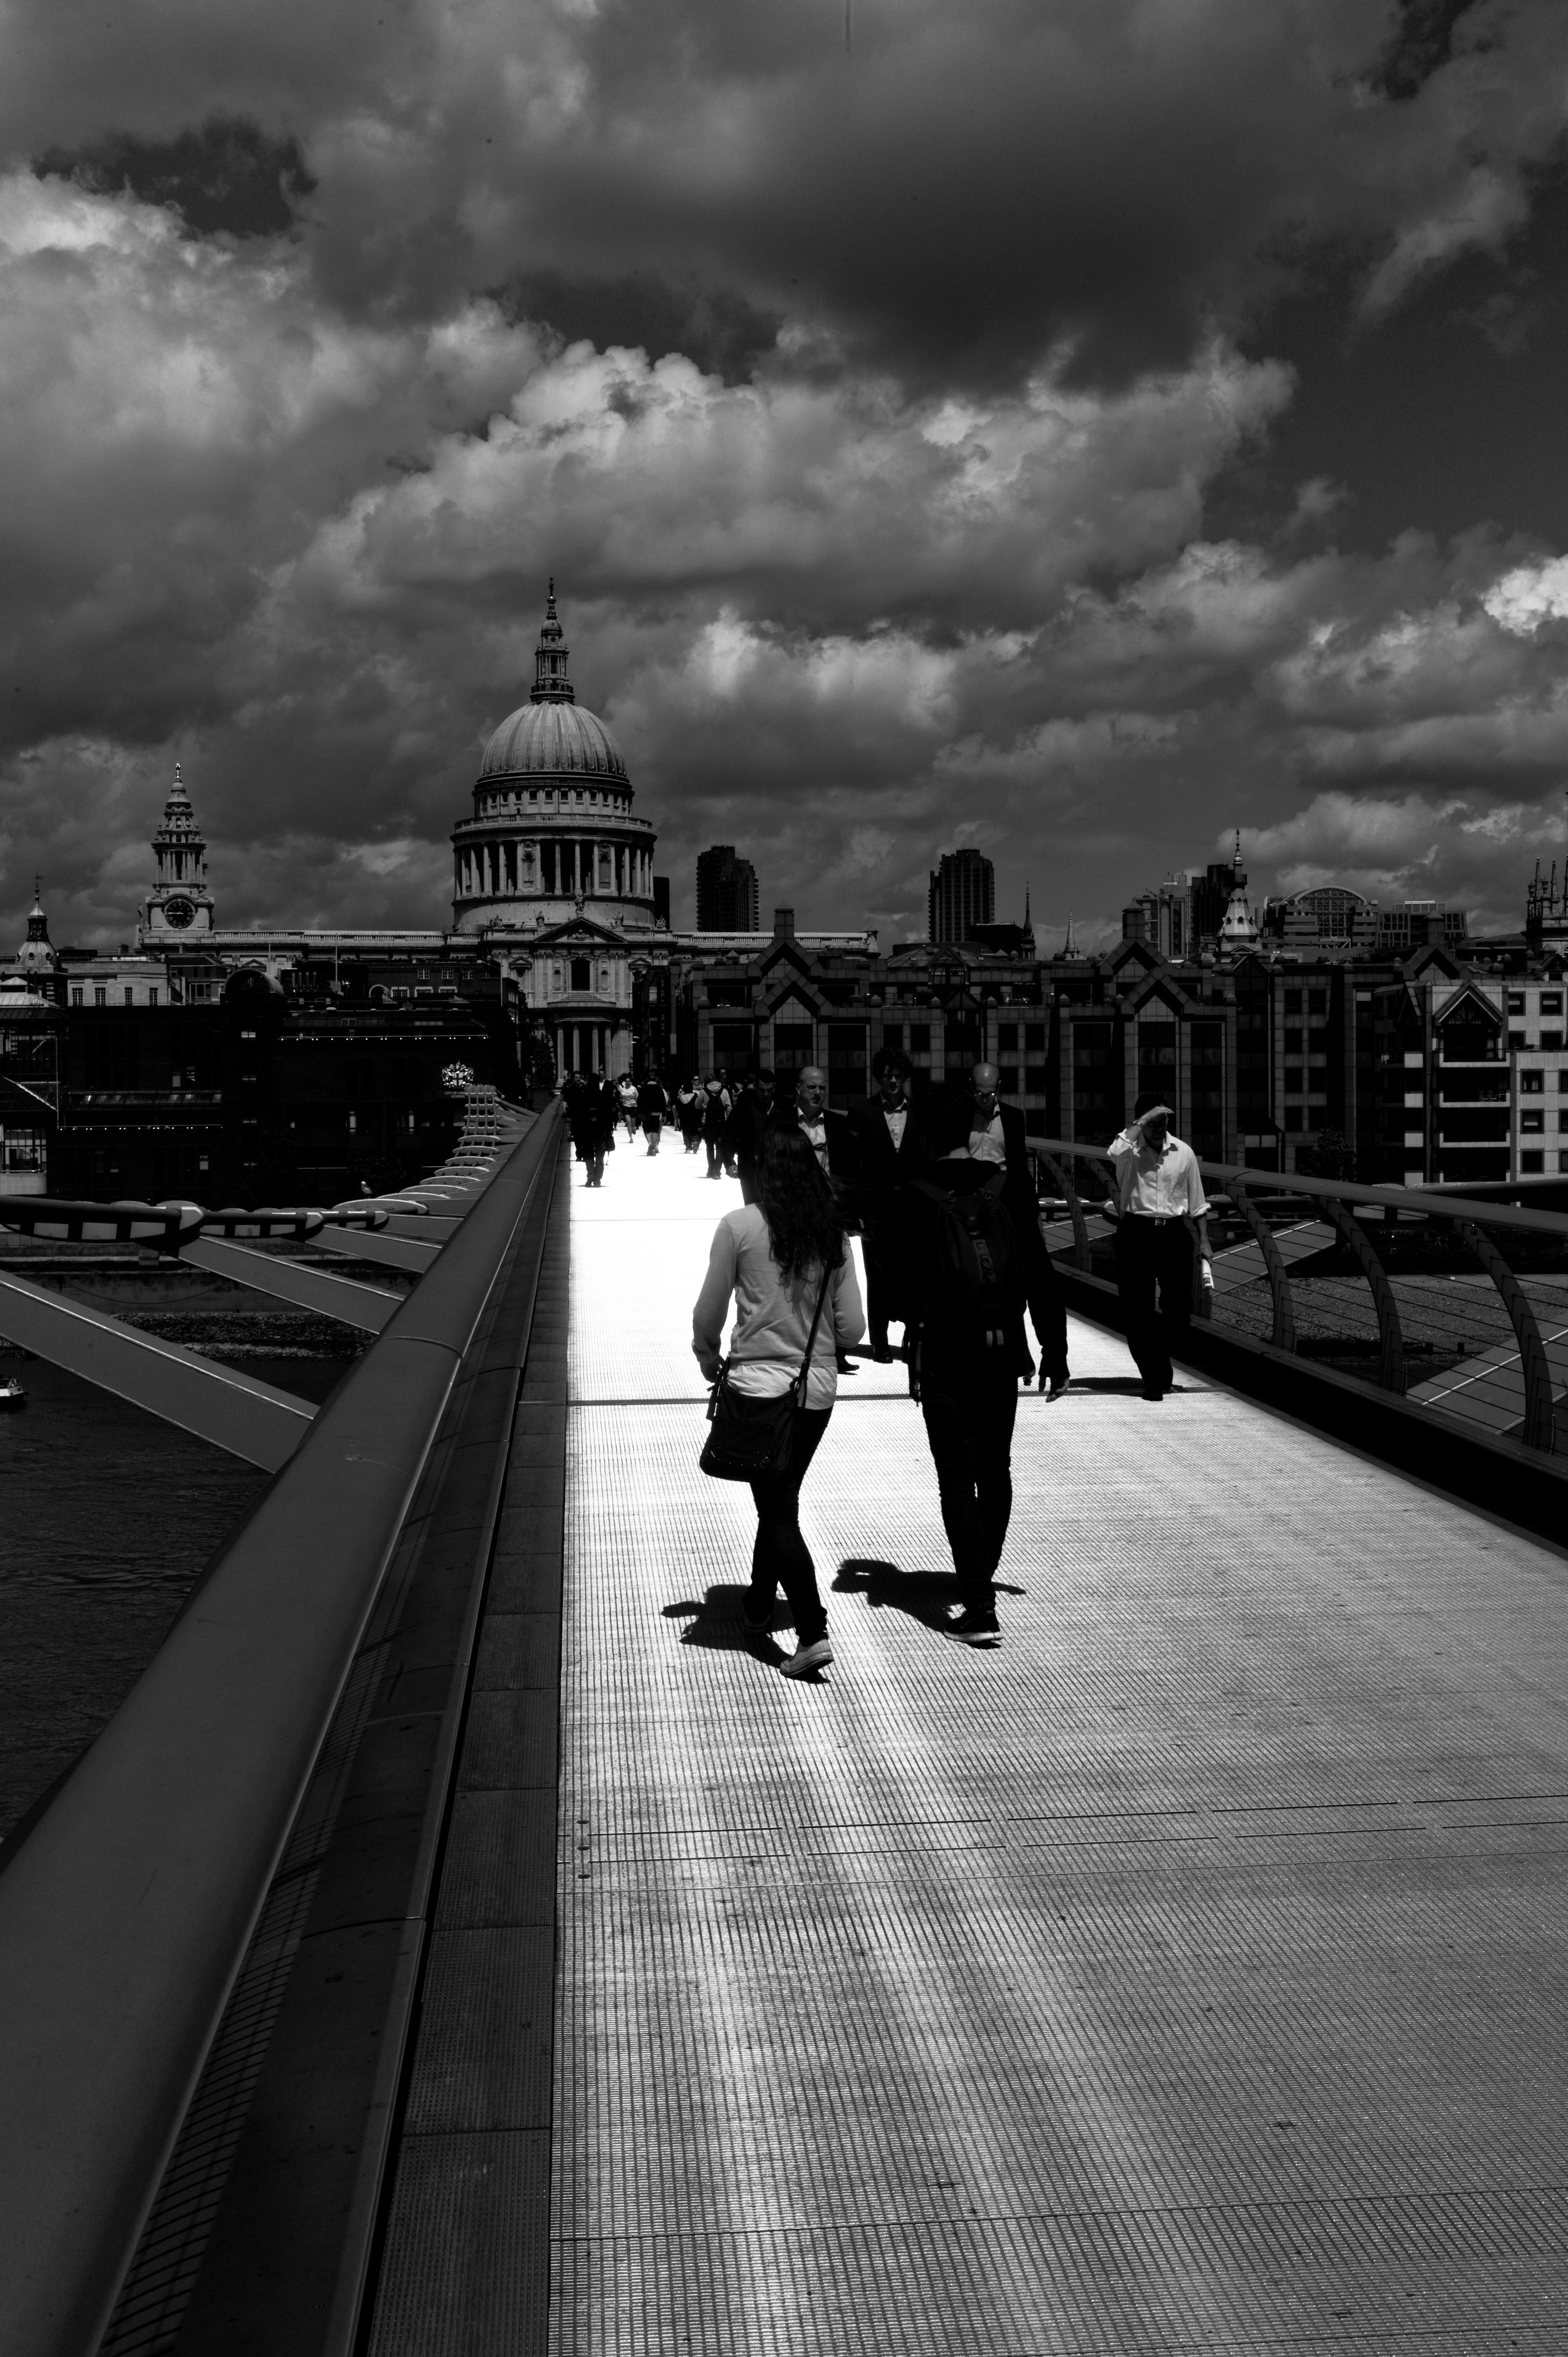 Millenium Bridge, Black and White